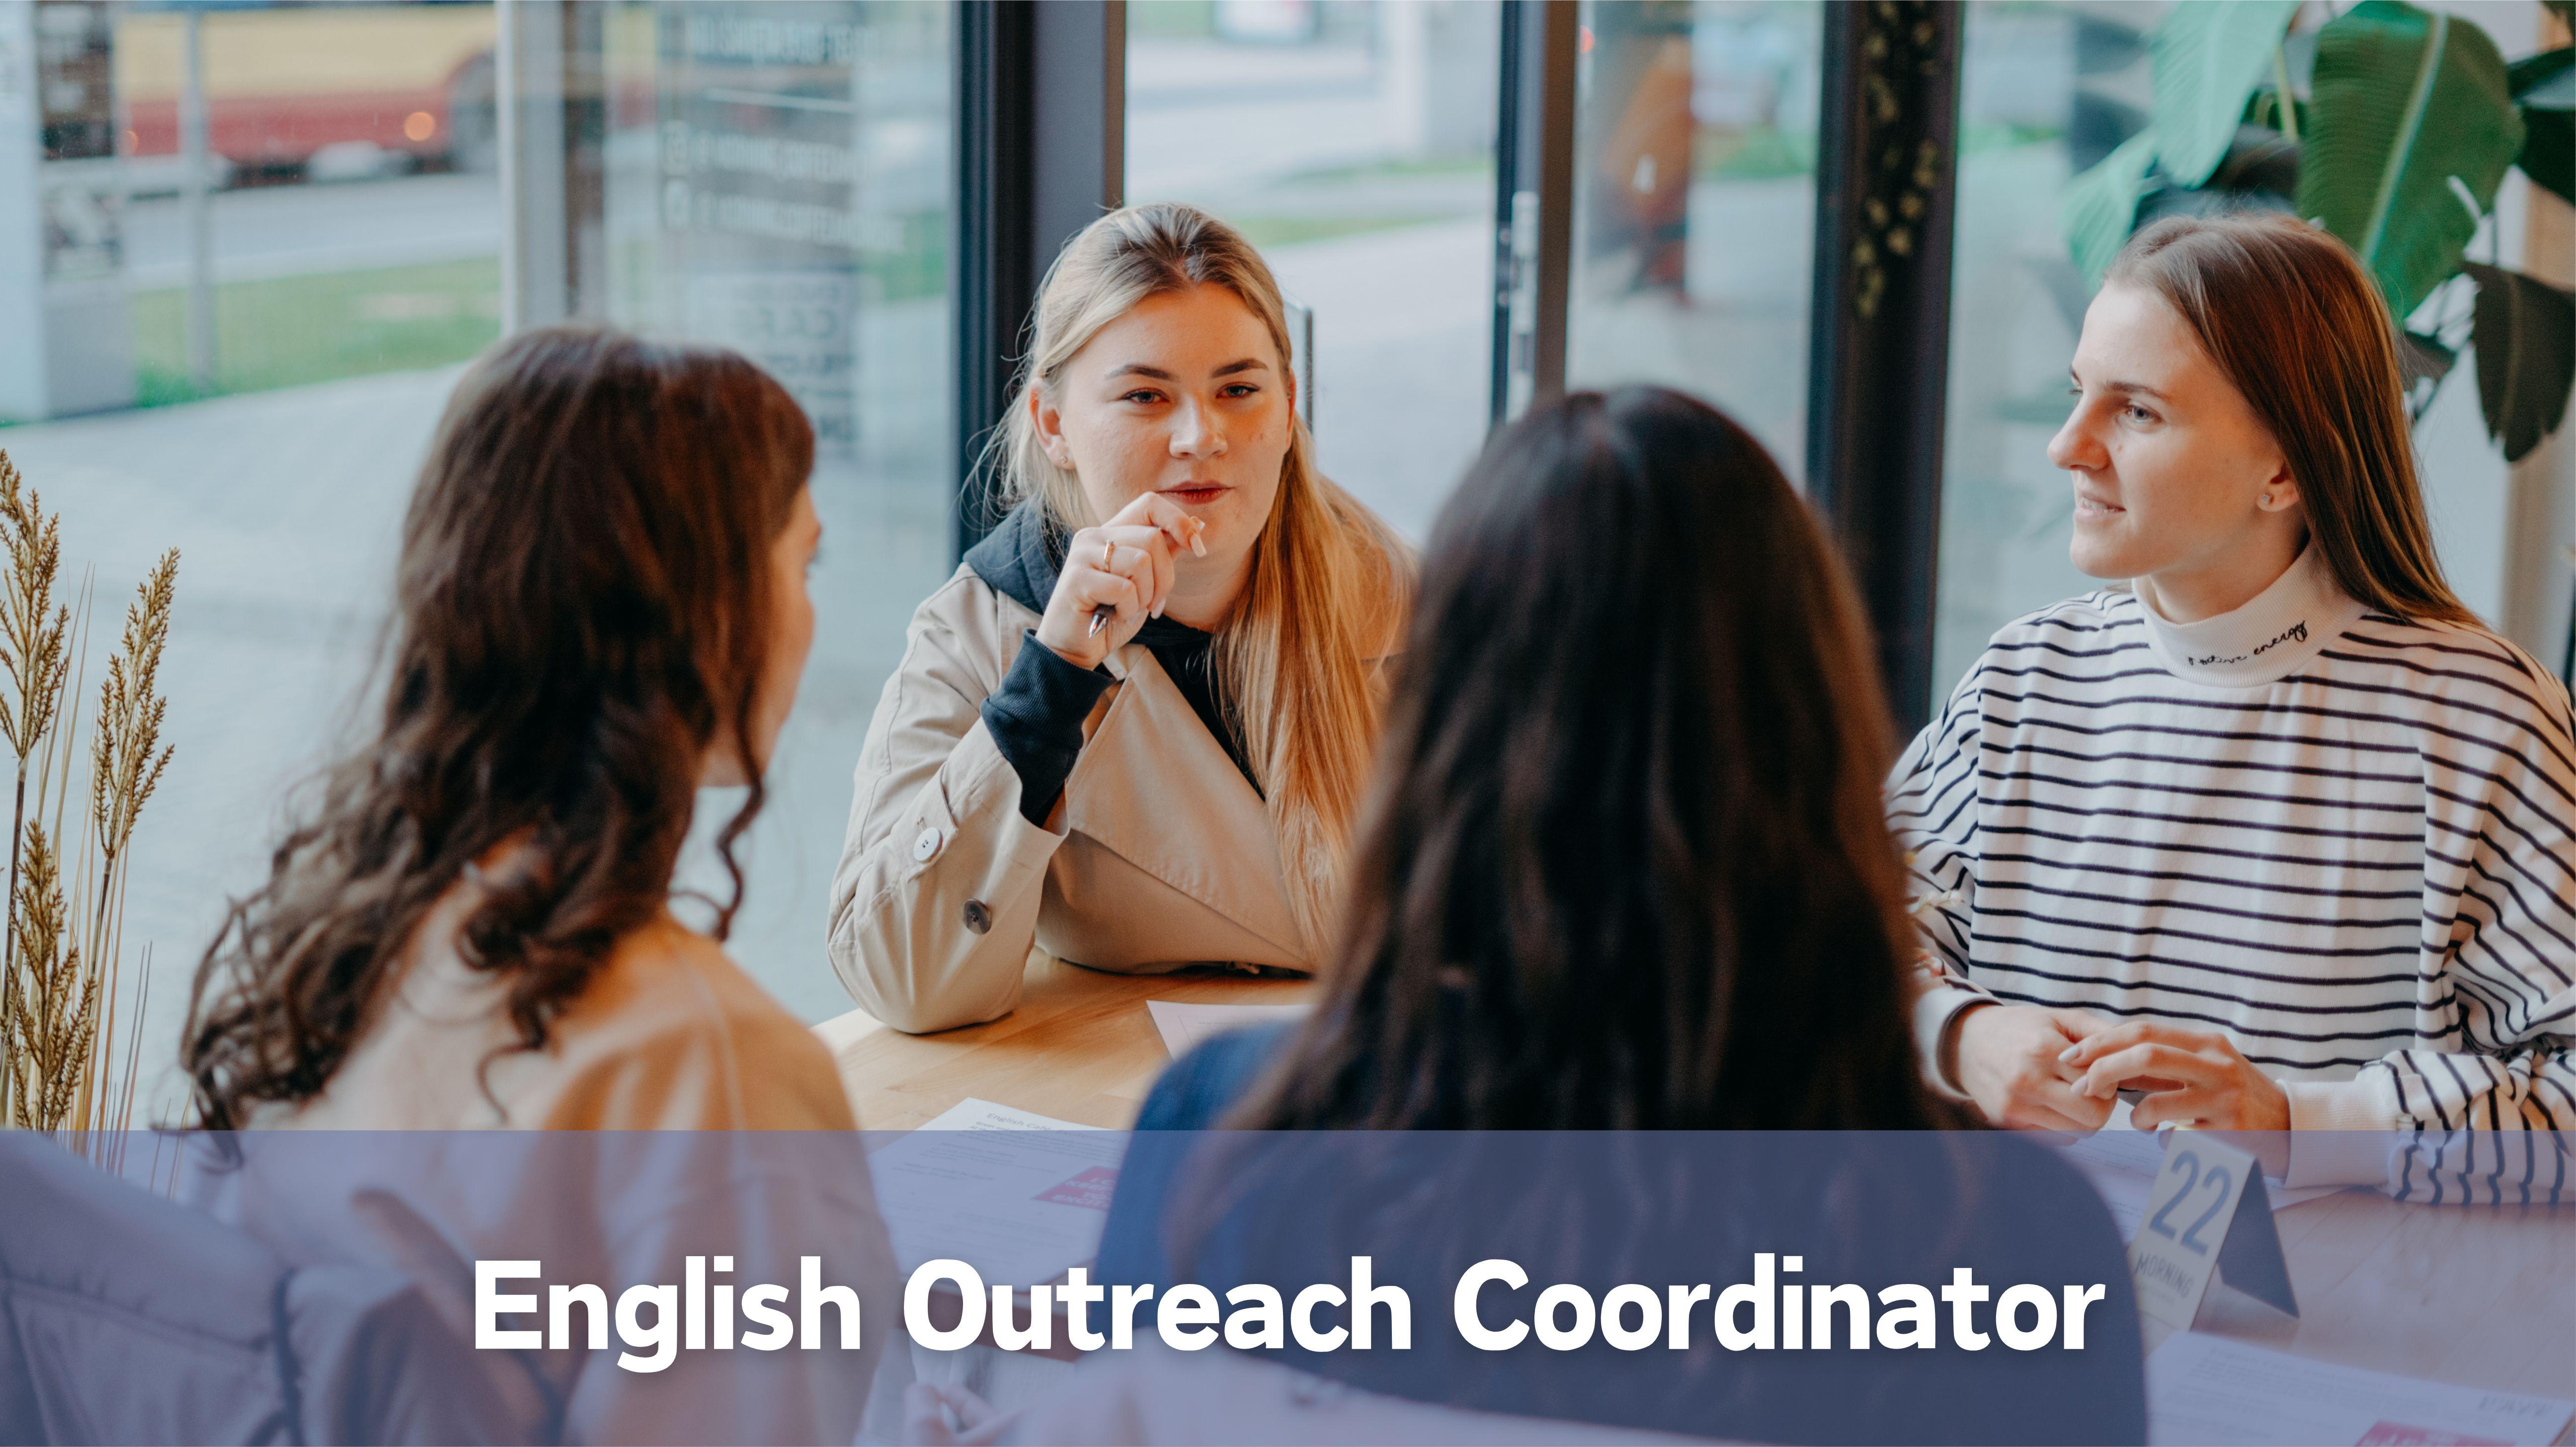 Poland English Outreach Coordinator